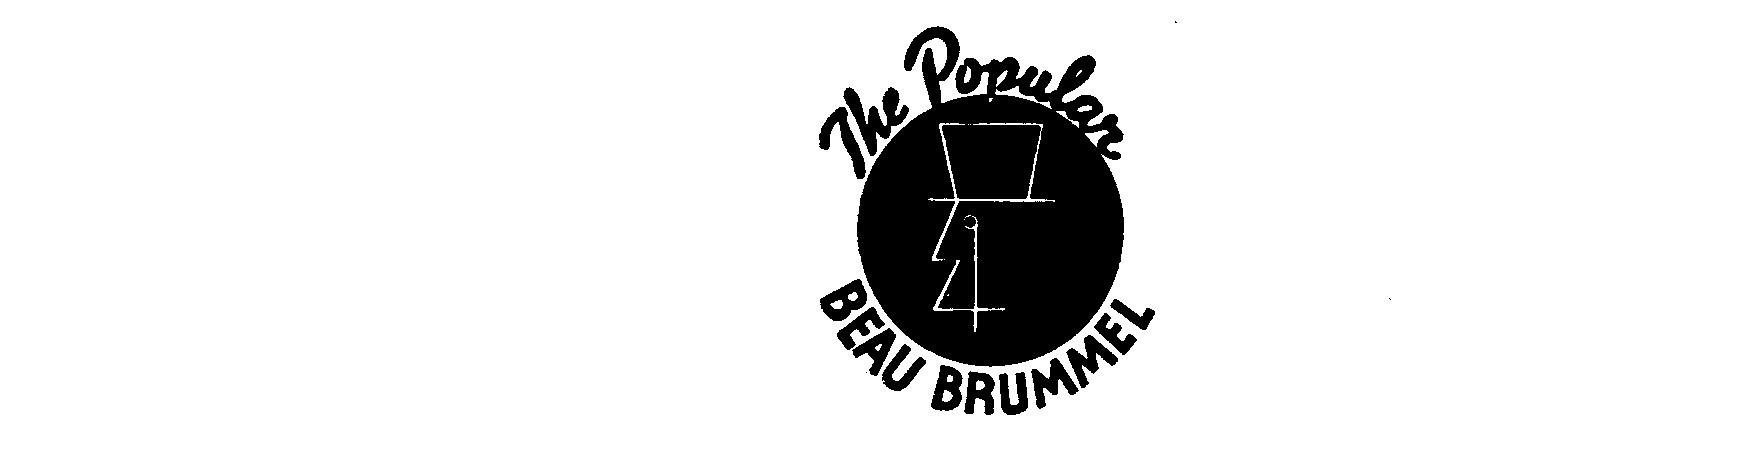  THE POPULAR BEAU BRUMMEL